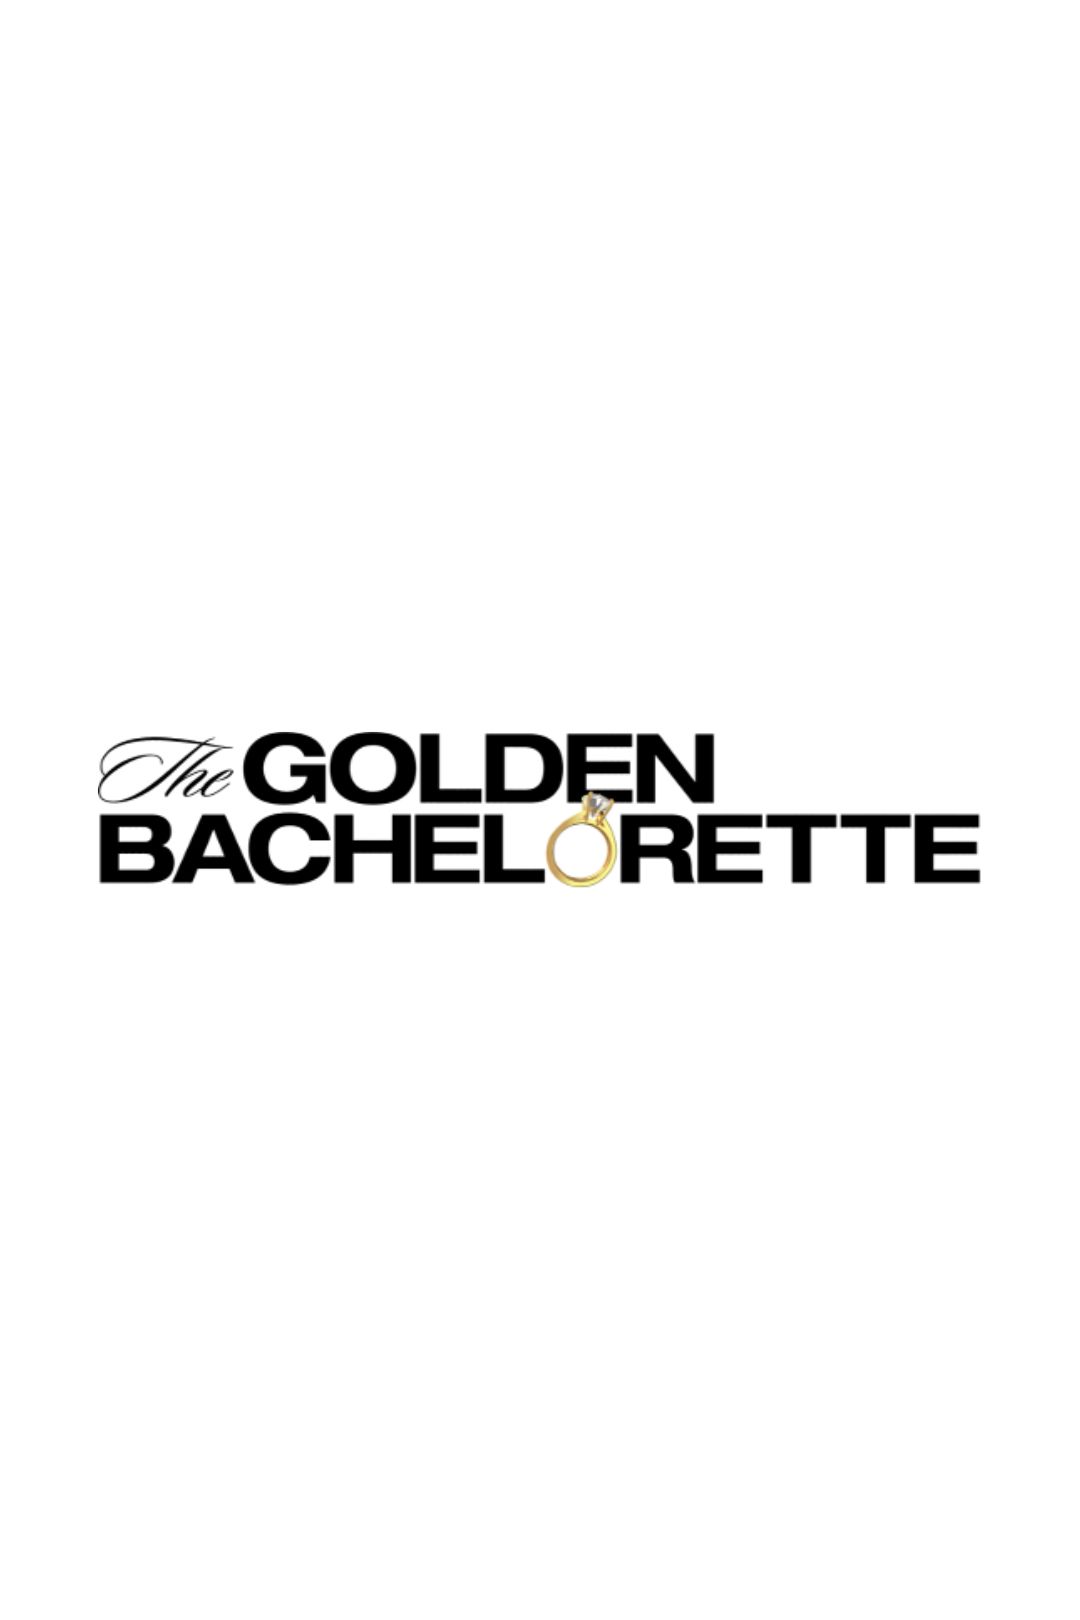 Cartaz temporário do logotipo da The Golden Bachelorette